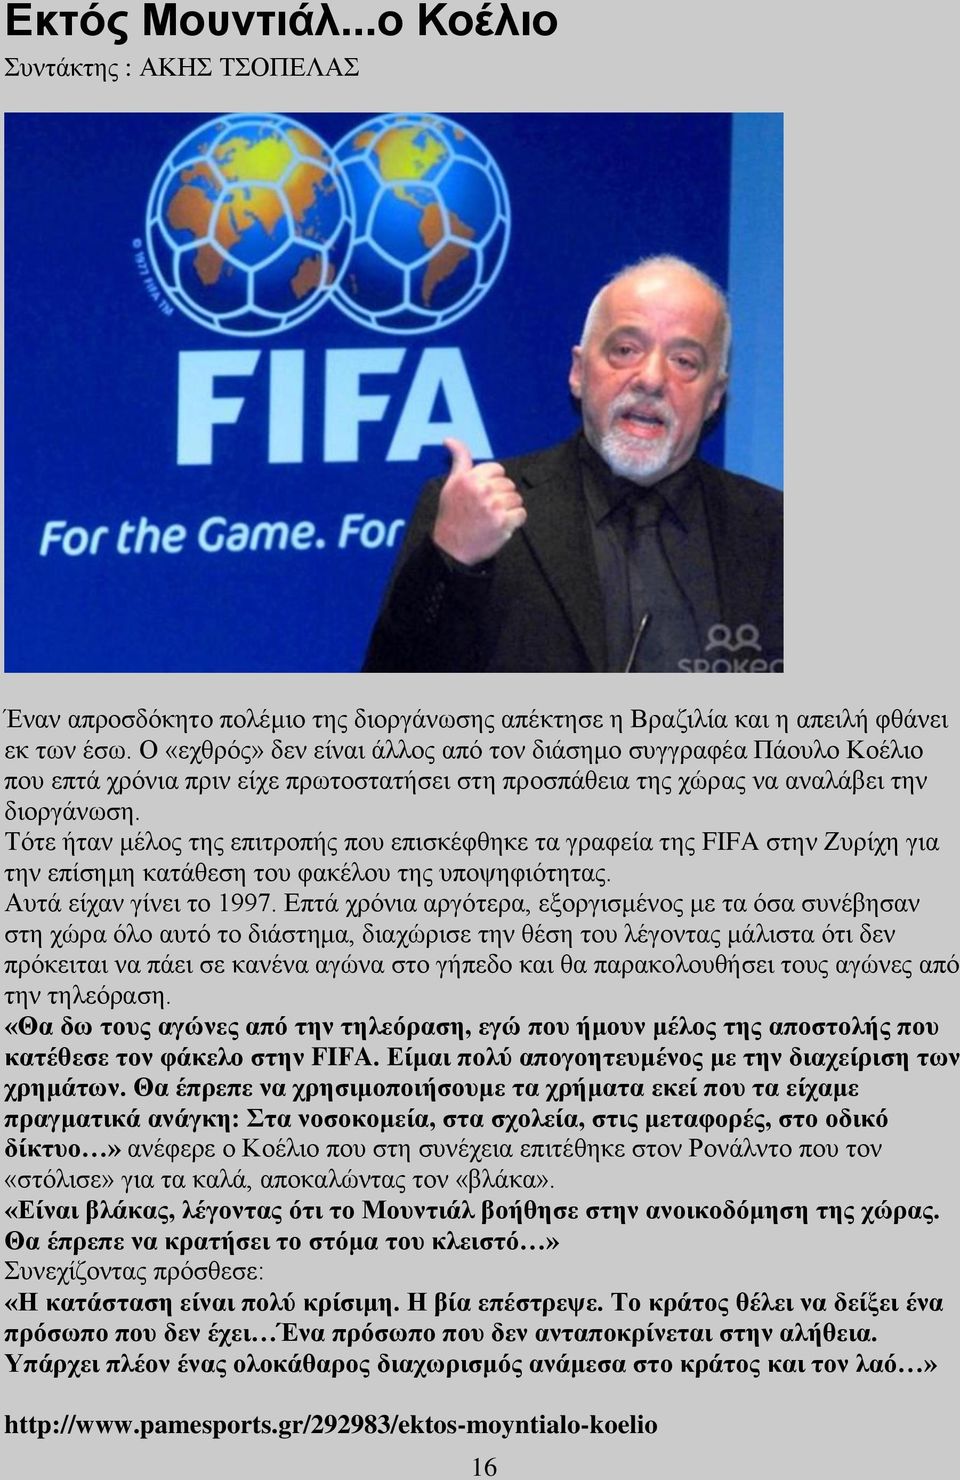 Τότε ήταν μέλος της επιτροπής που επισκέφθηκε τα γραφεία της FIFA στην Ζυρίχη για την επίσημη κατάθεση του φακέλου της υποψηφιότητας. Αυτά είχαν γίνει το 1997.